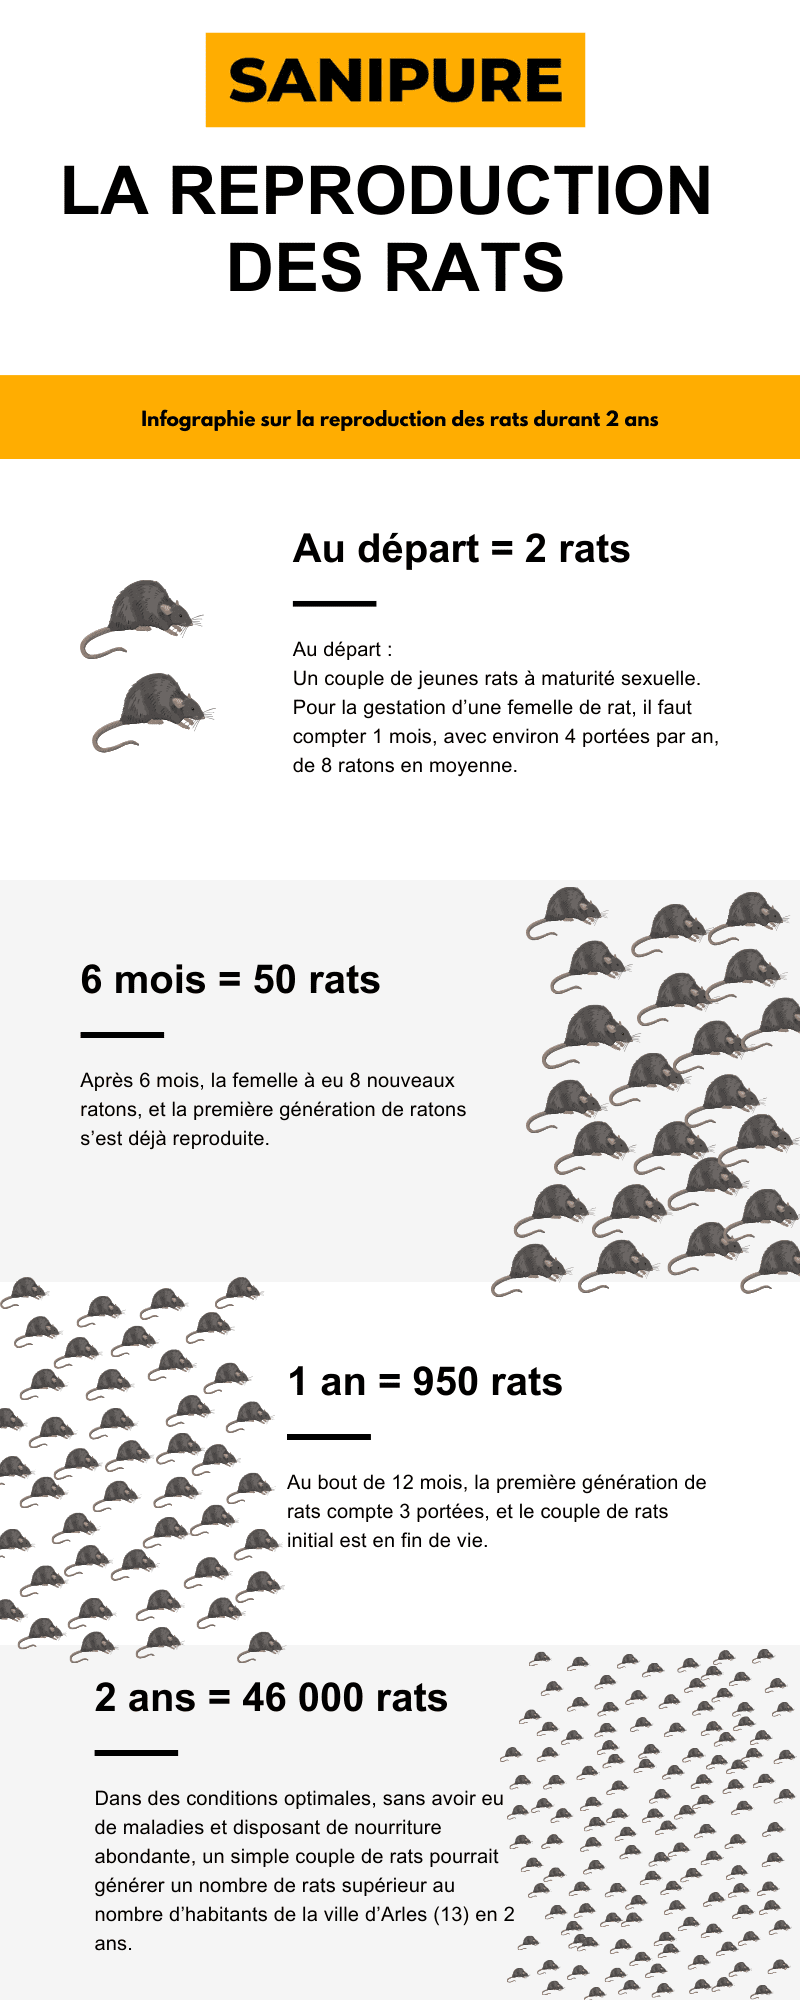 infographie sur la reproduction des rats